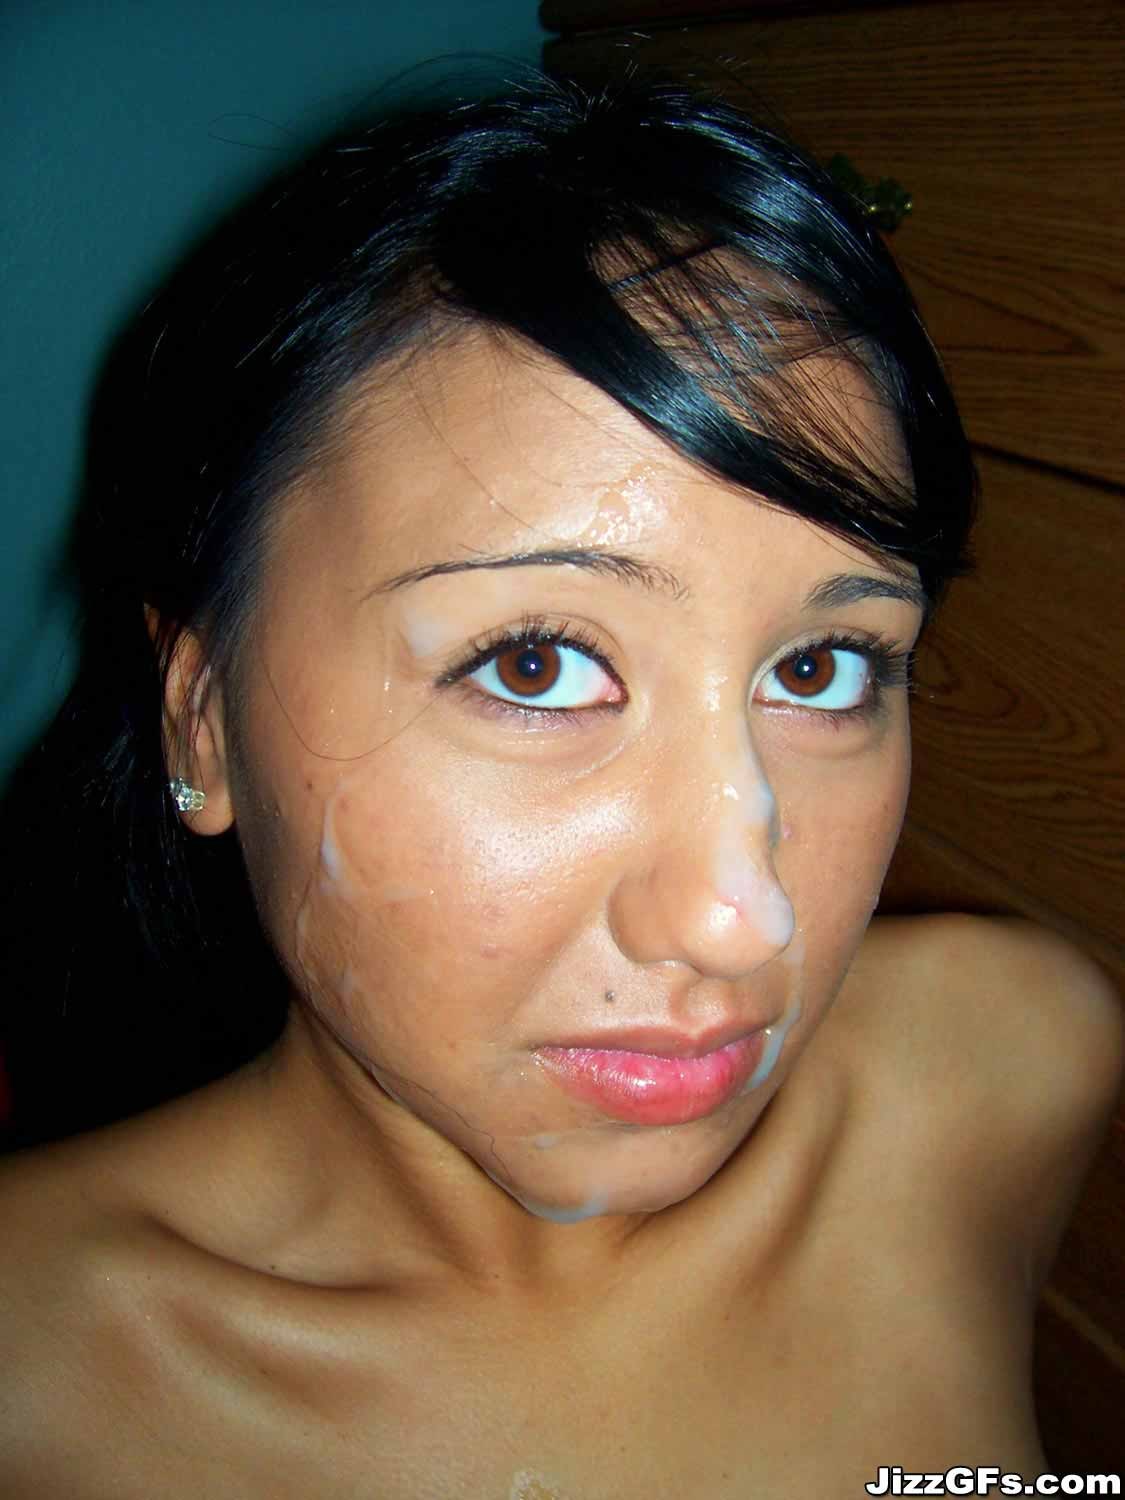 Asian amateur girl on blowjob action getting facial cum shot #69915935